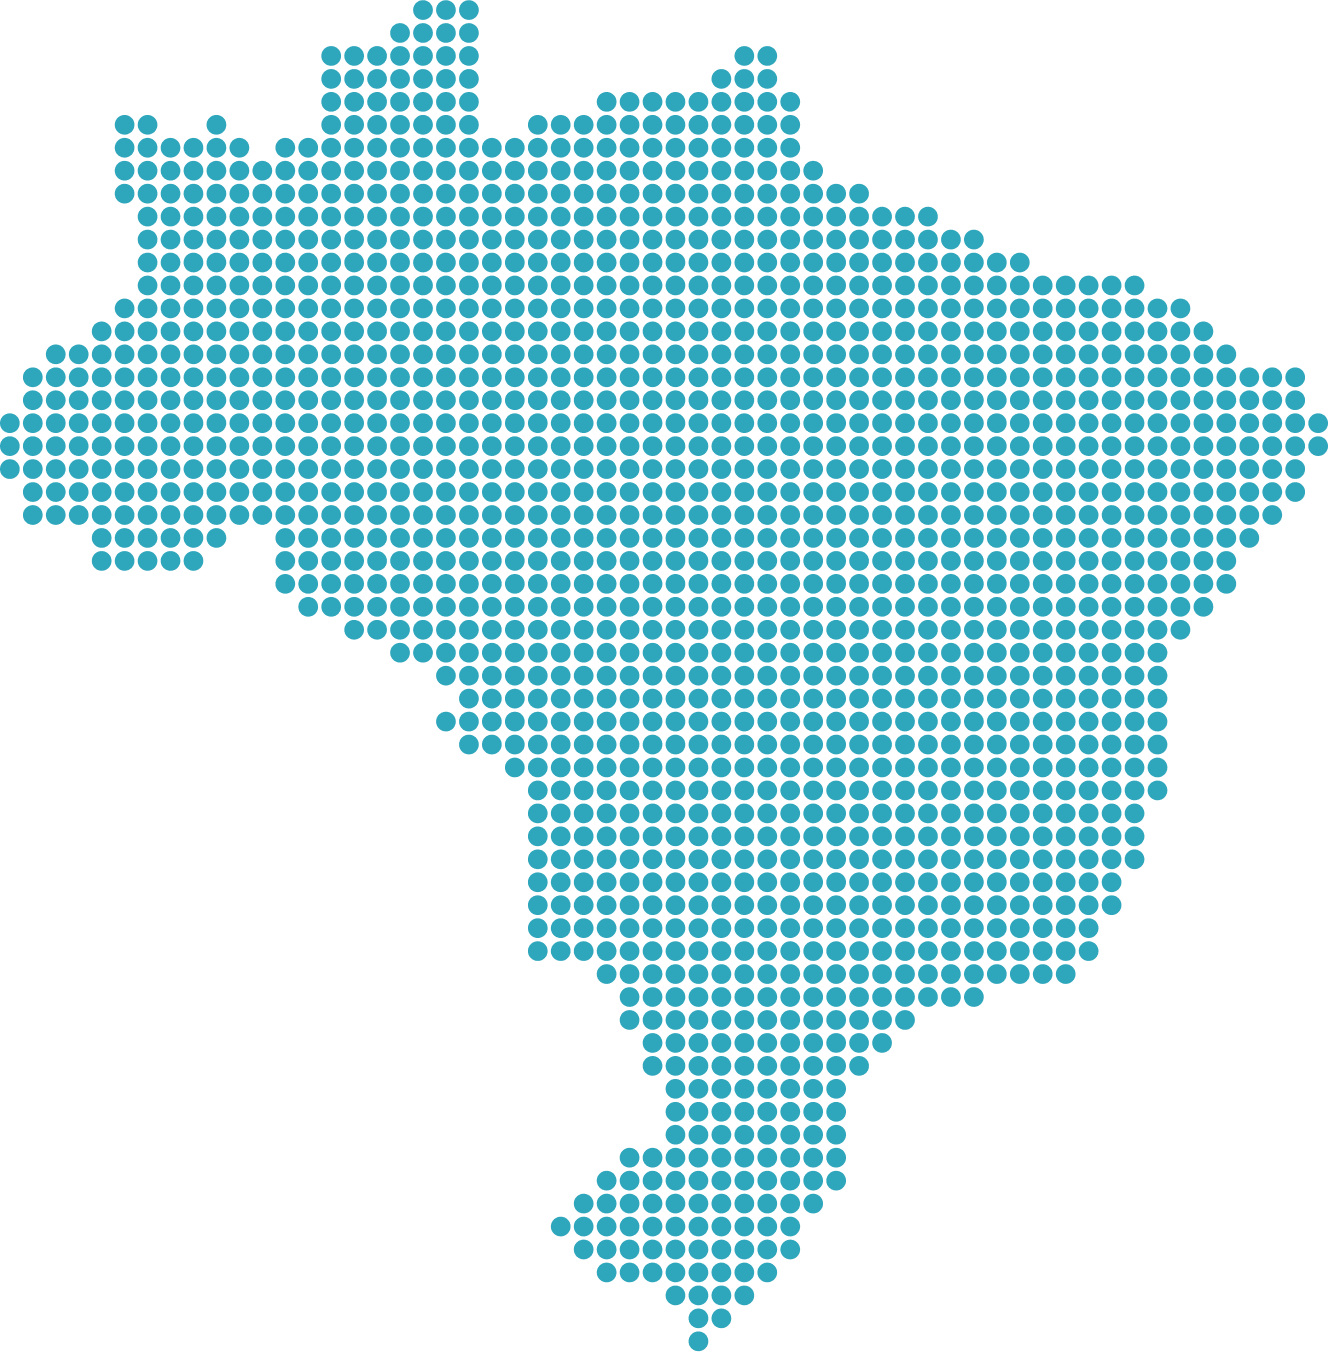 Mapa do Brasil desenhado em diversas pequenas bolinhas azuis.